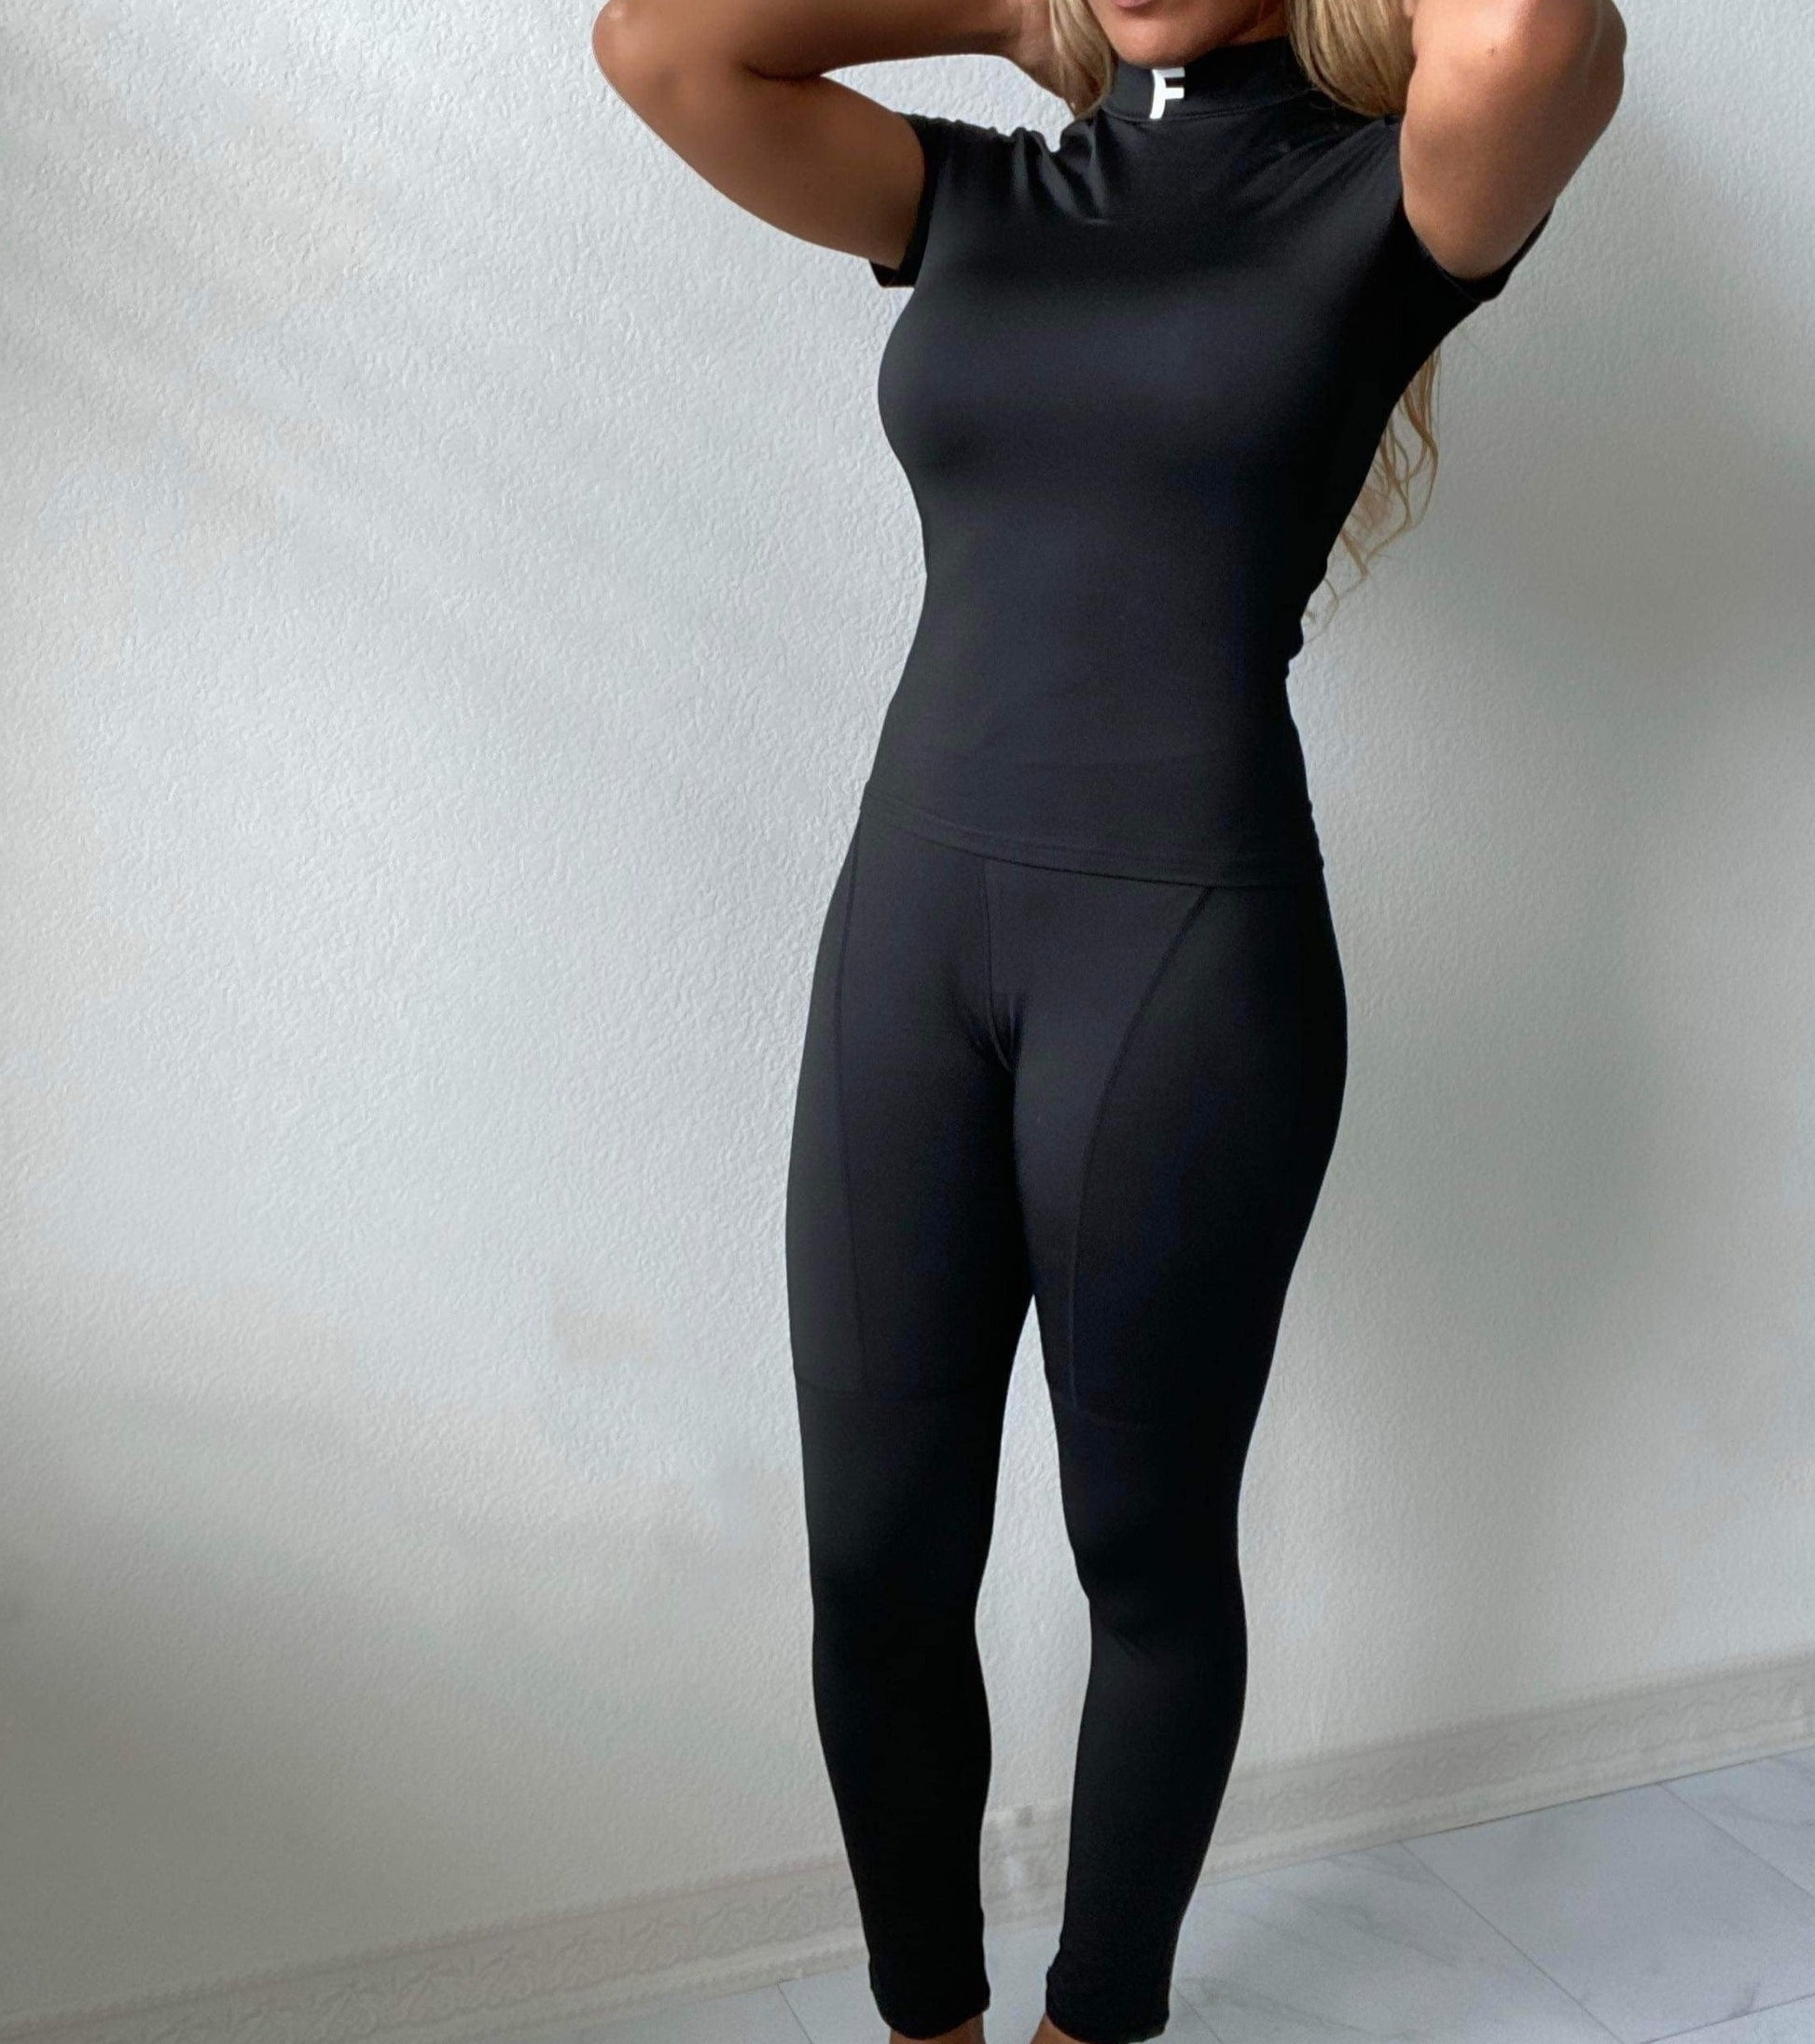 Women's Casual Stretchy Pants Set- Black- Polyester/ Spandex- Baebekillinem Boutique